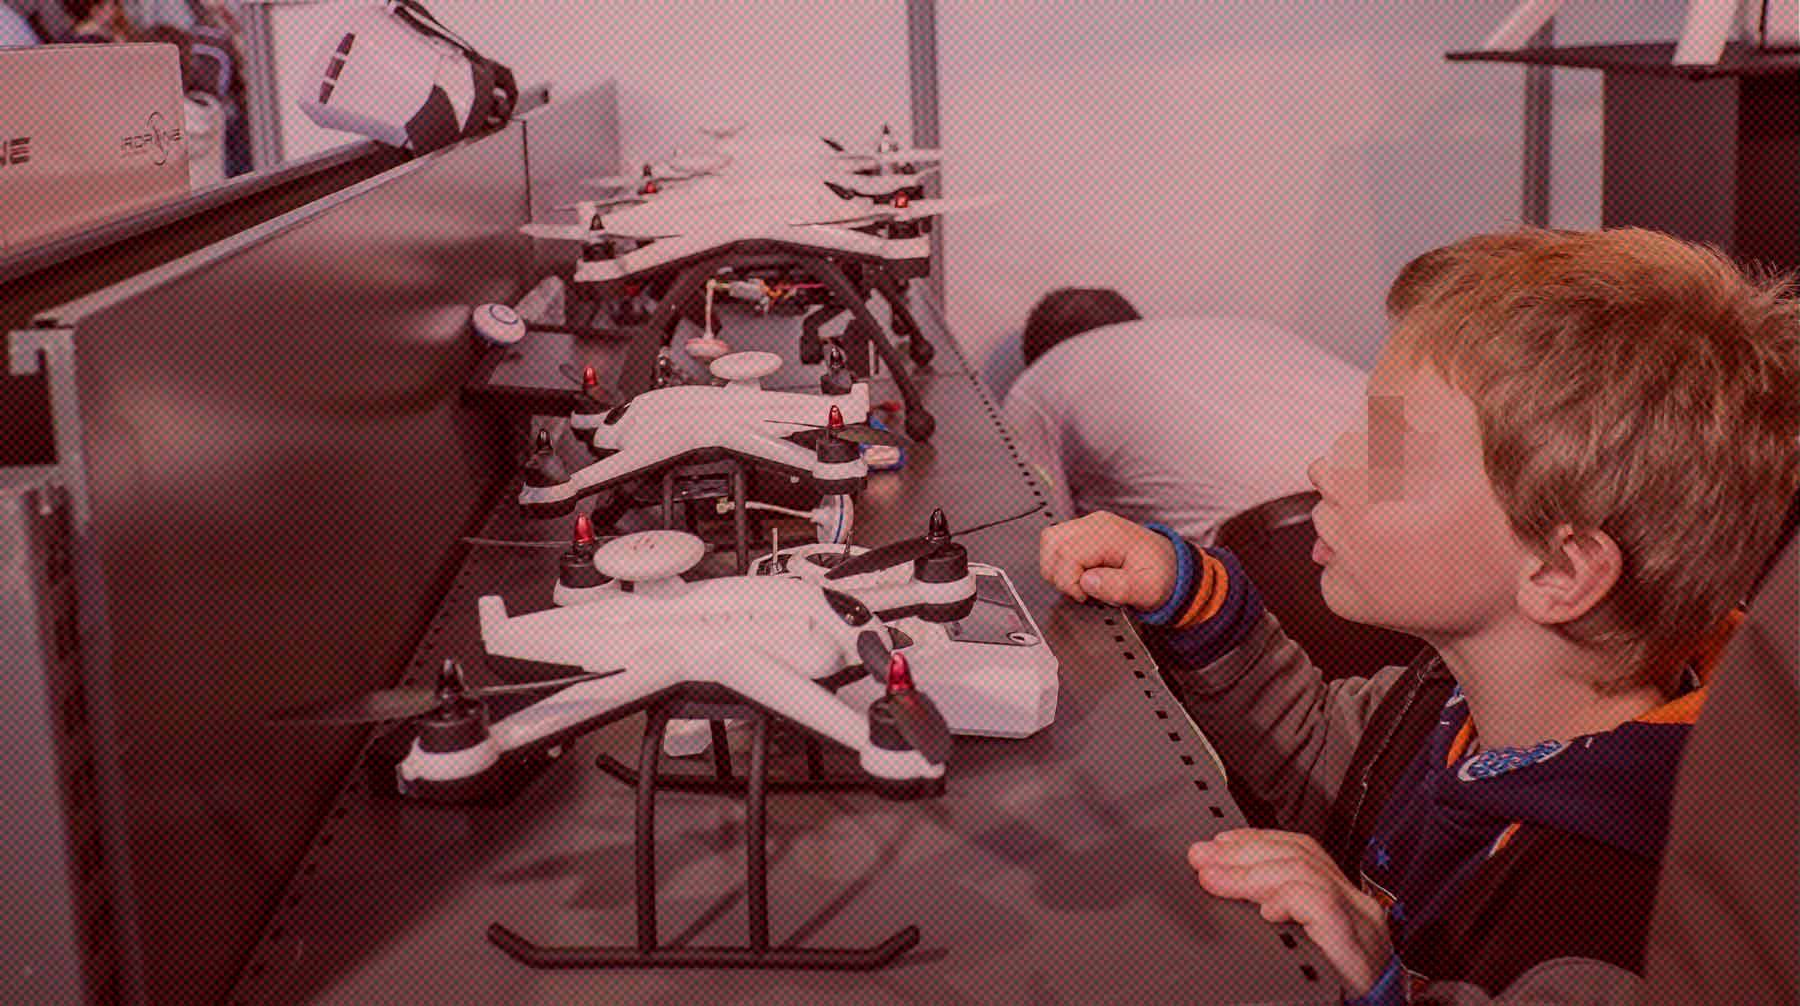 Dailystorm - Детей в школах будут обучать управлению дронами с помощью VR-игры «Небо-2024»